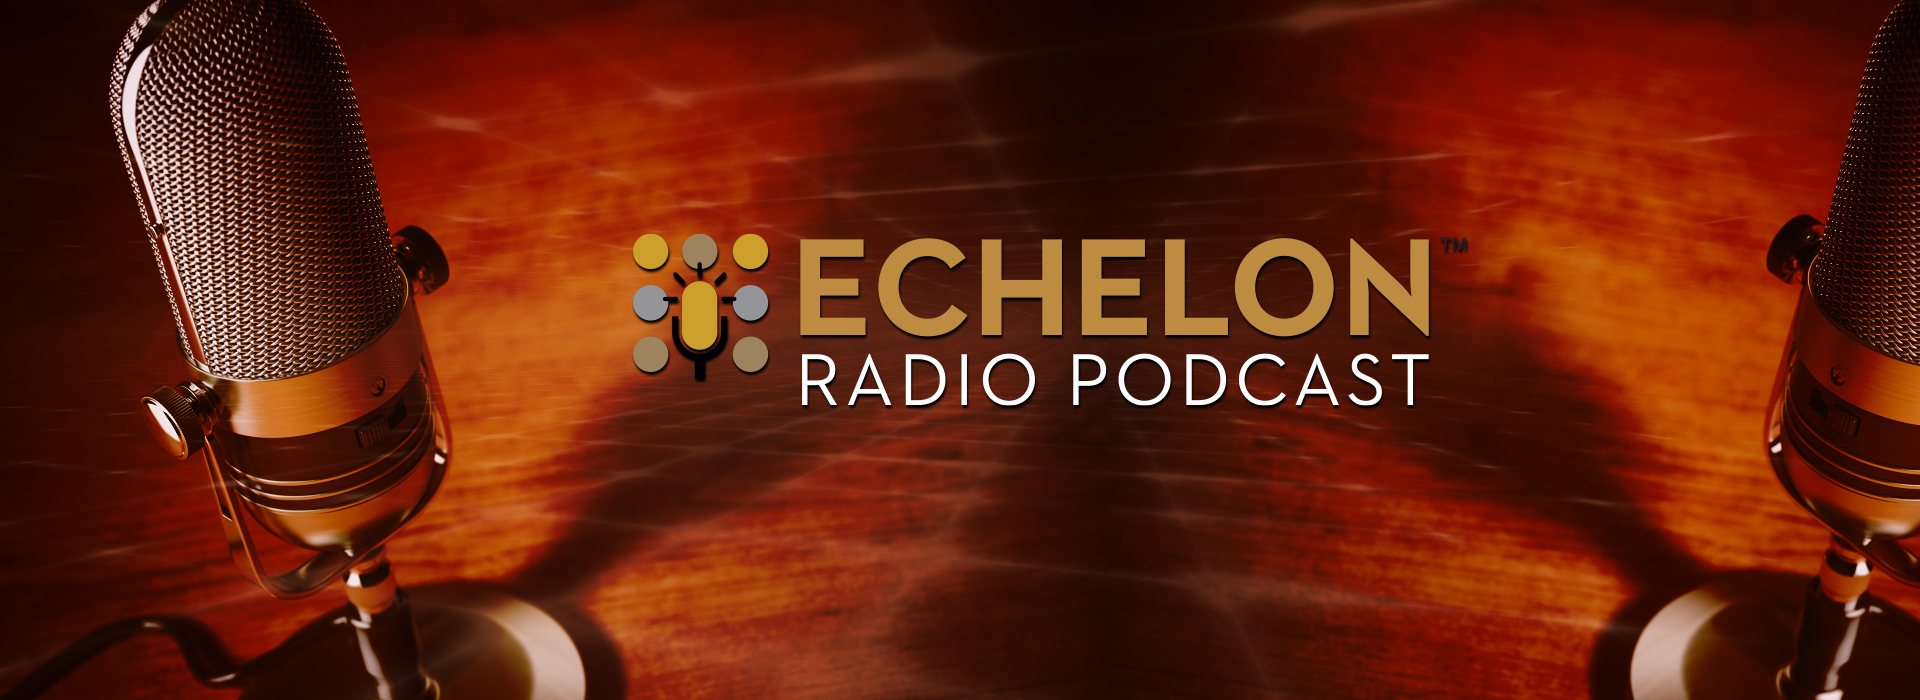 Echelon Radio Podcast